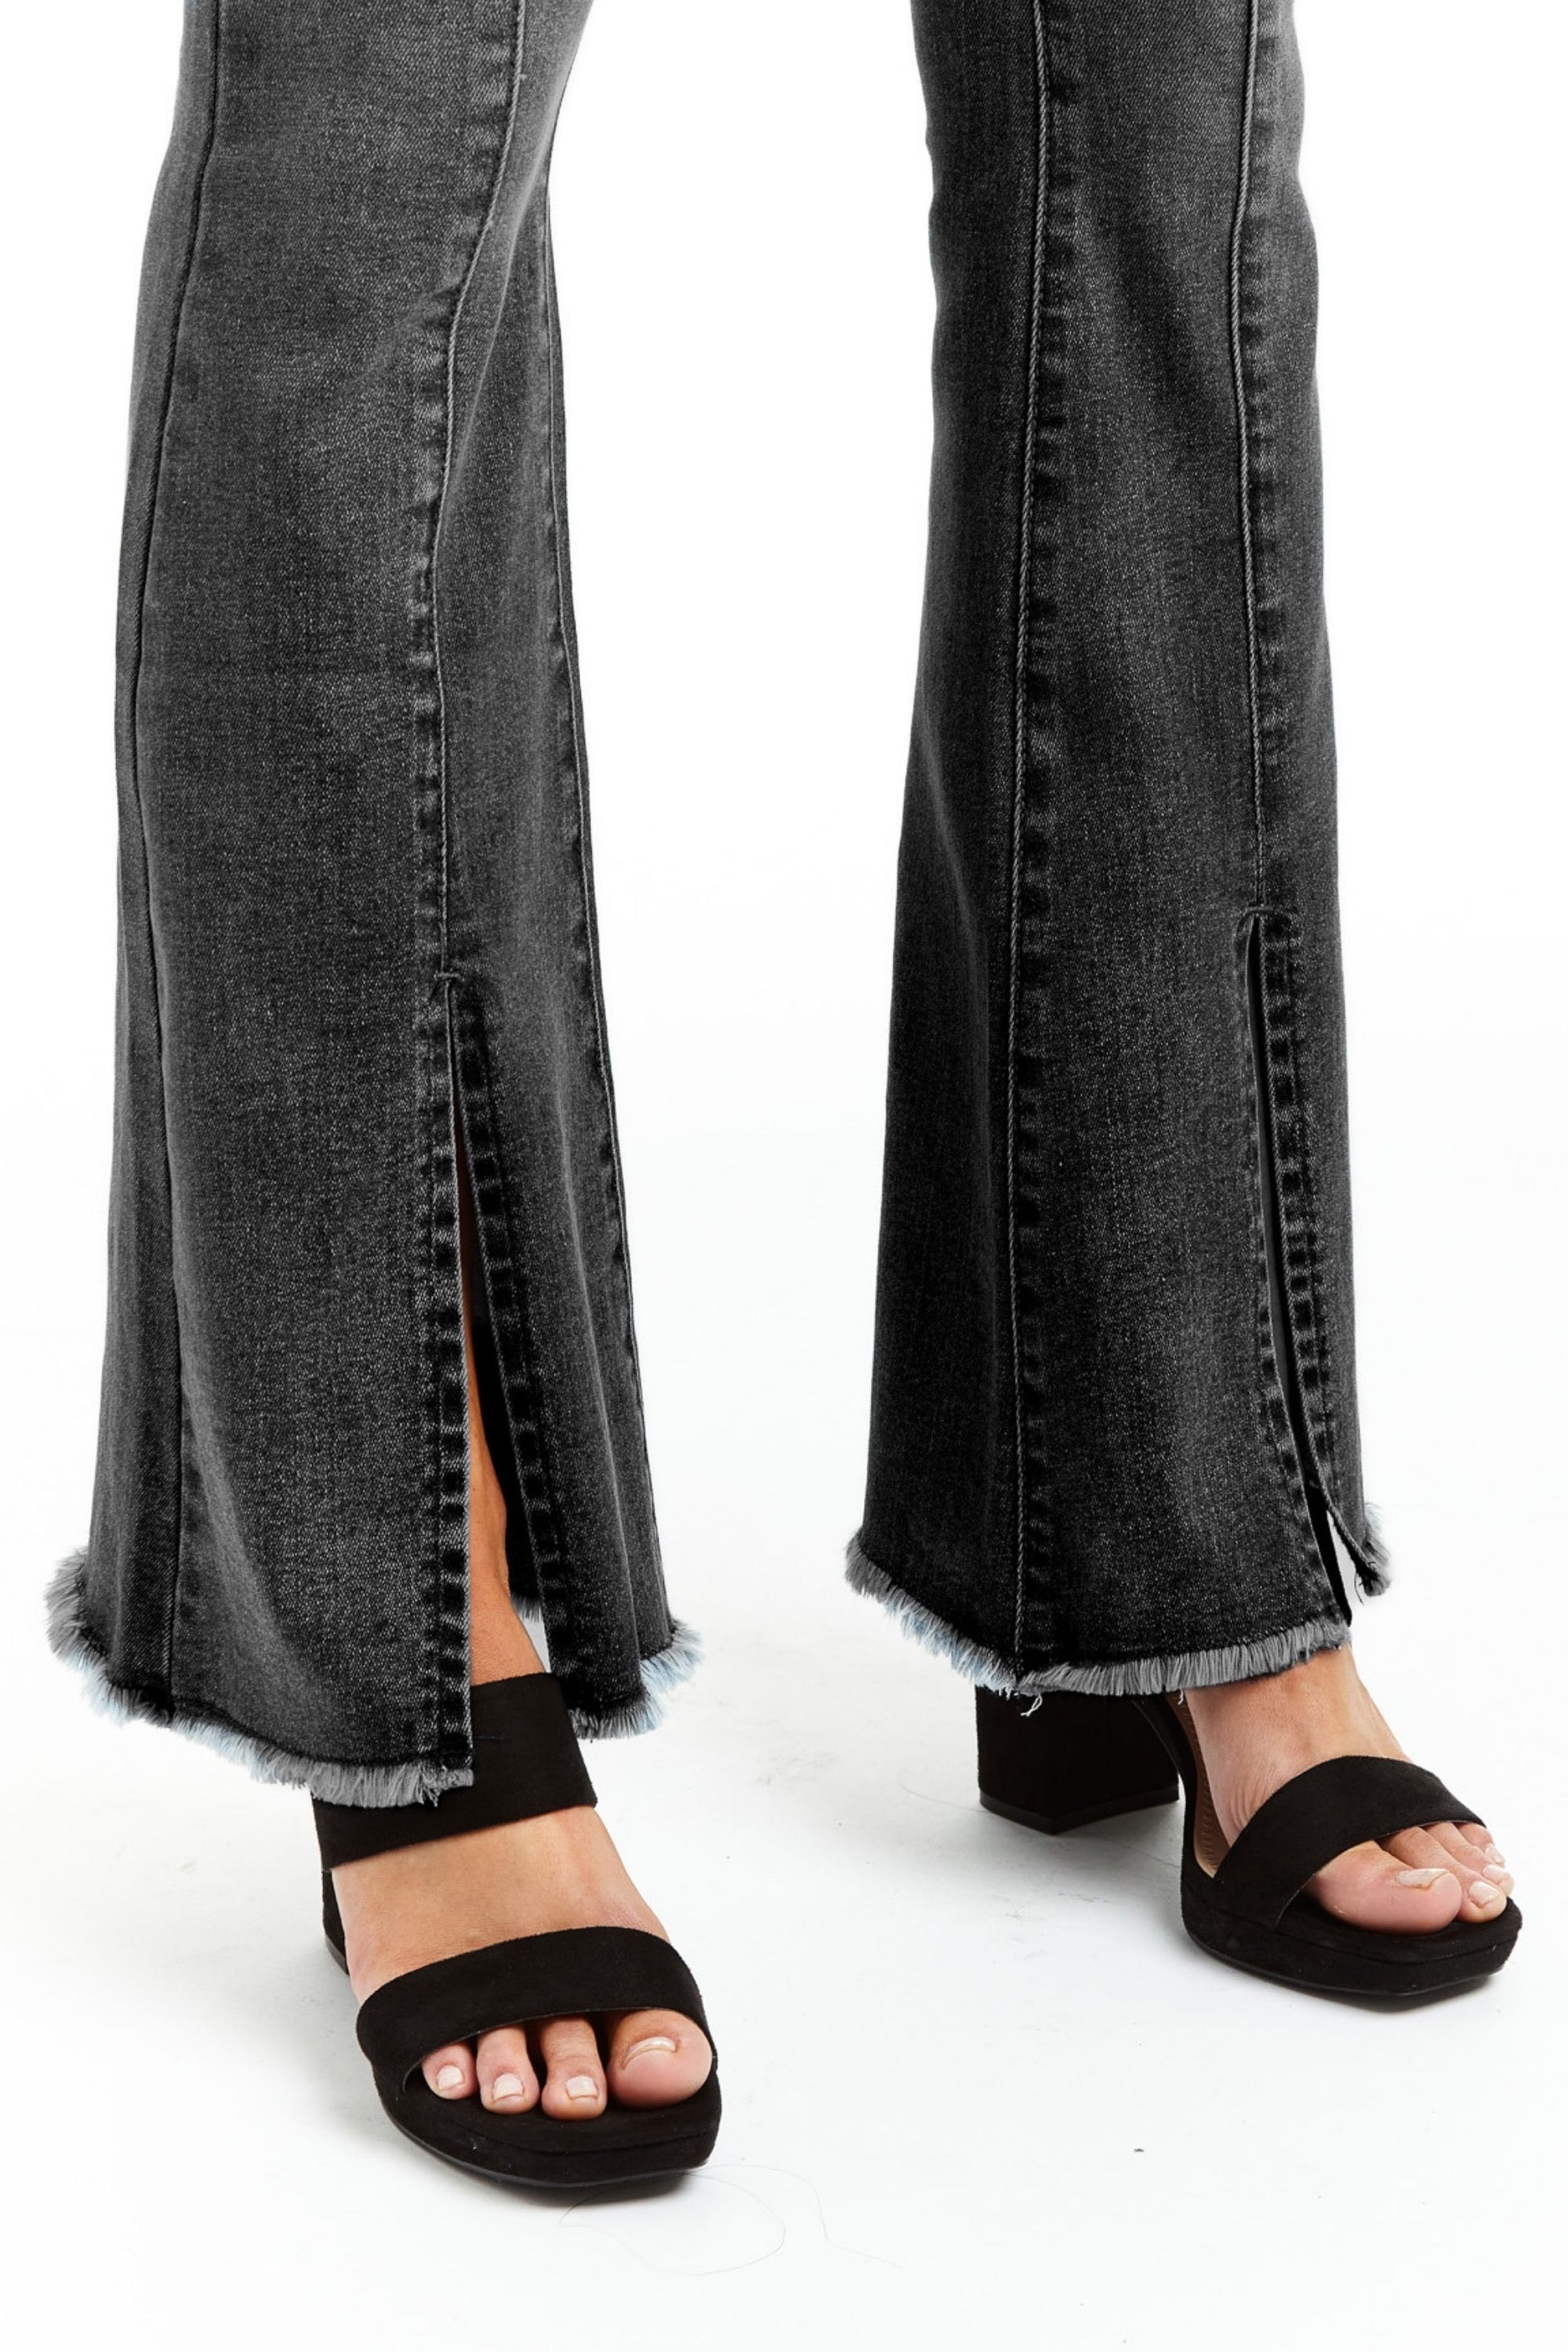 Womens Flare Pants Black High Waist Zipper Seam Slit Front Leg